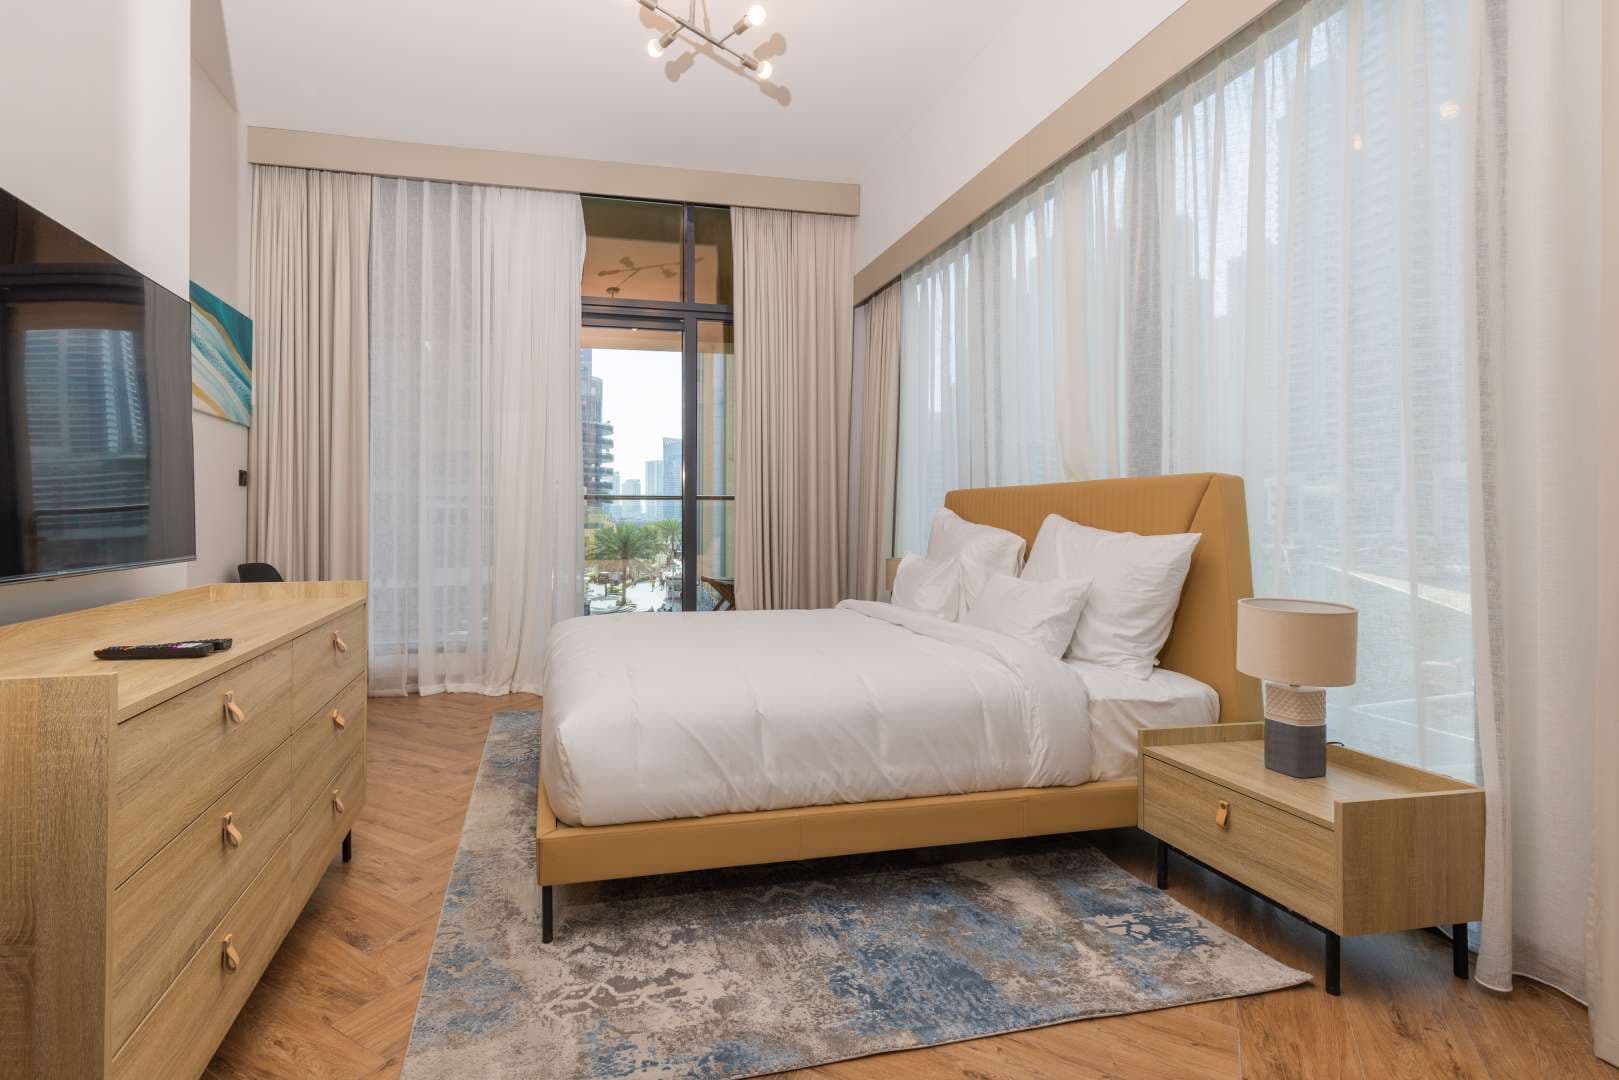 2 Bedroom Villa For Rent Dubai Marina Moon Lp11825 2d95f040cb896a00.jpg